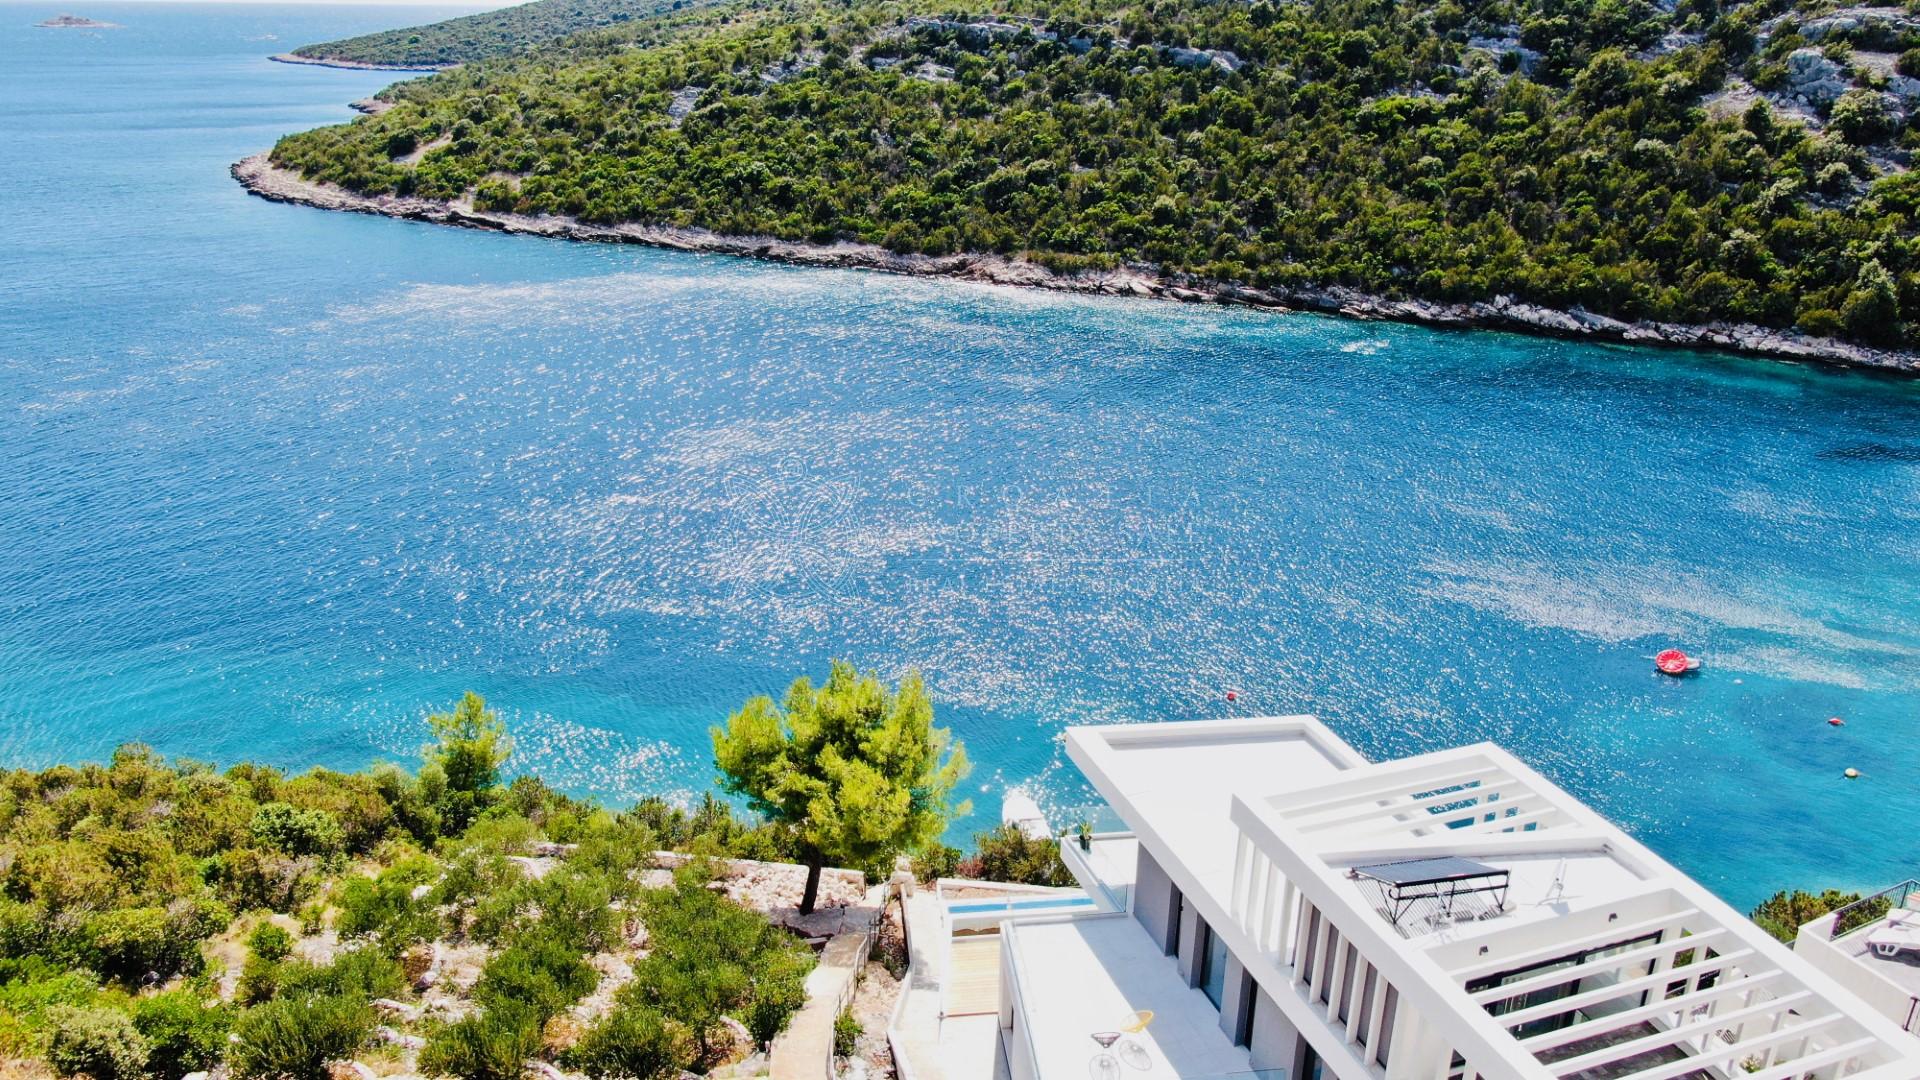 Croatia Trogir area luxury villa for sale